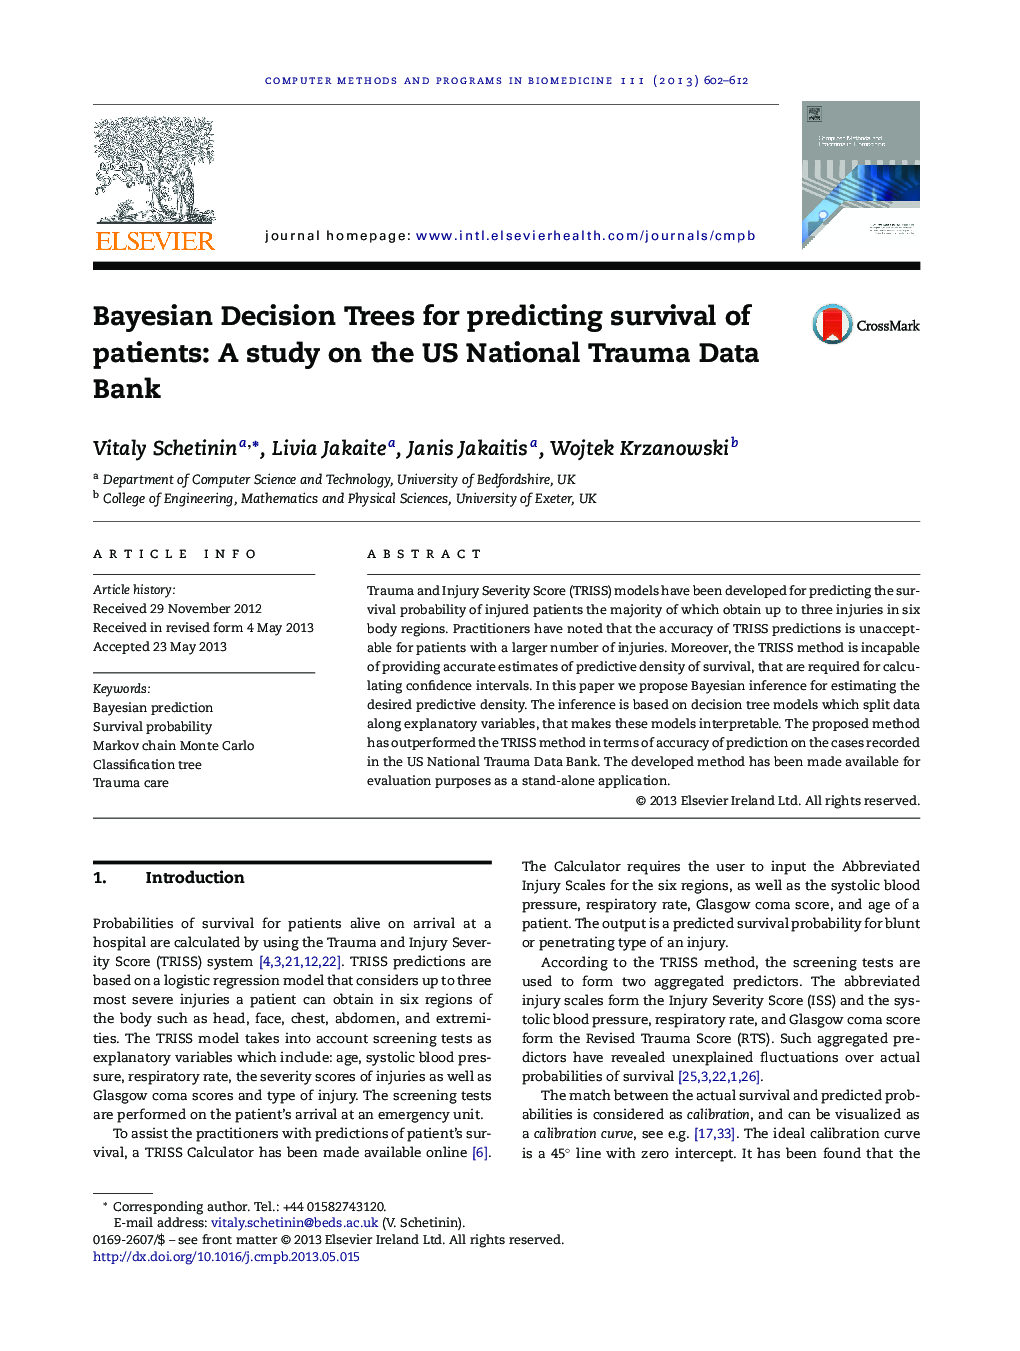 درخت تصمیم گیری بیزی برای پیش بینی بقای بیماران: مطالعه در مورد بانک اطلاعاتی تروما ملی ایالات متحده 